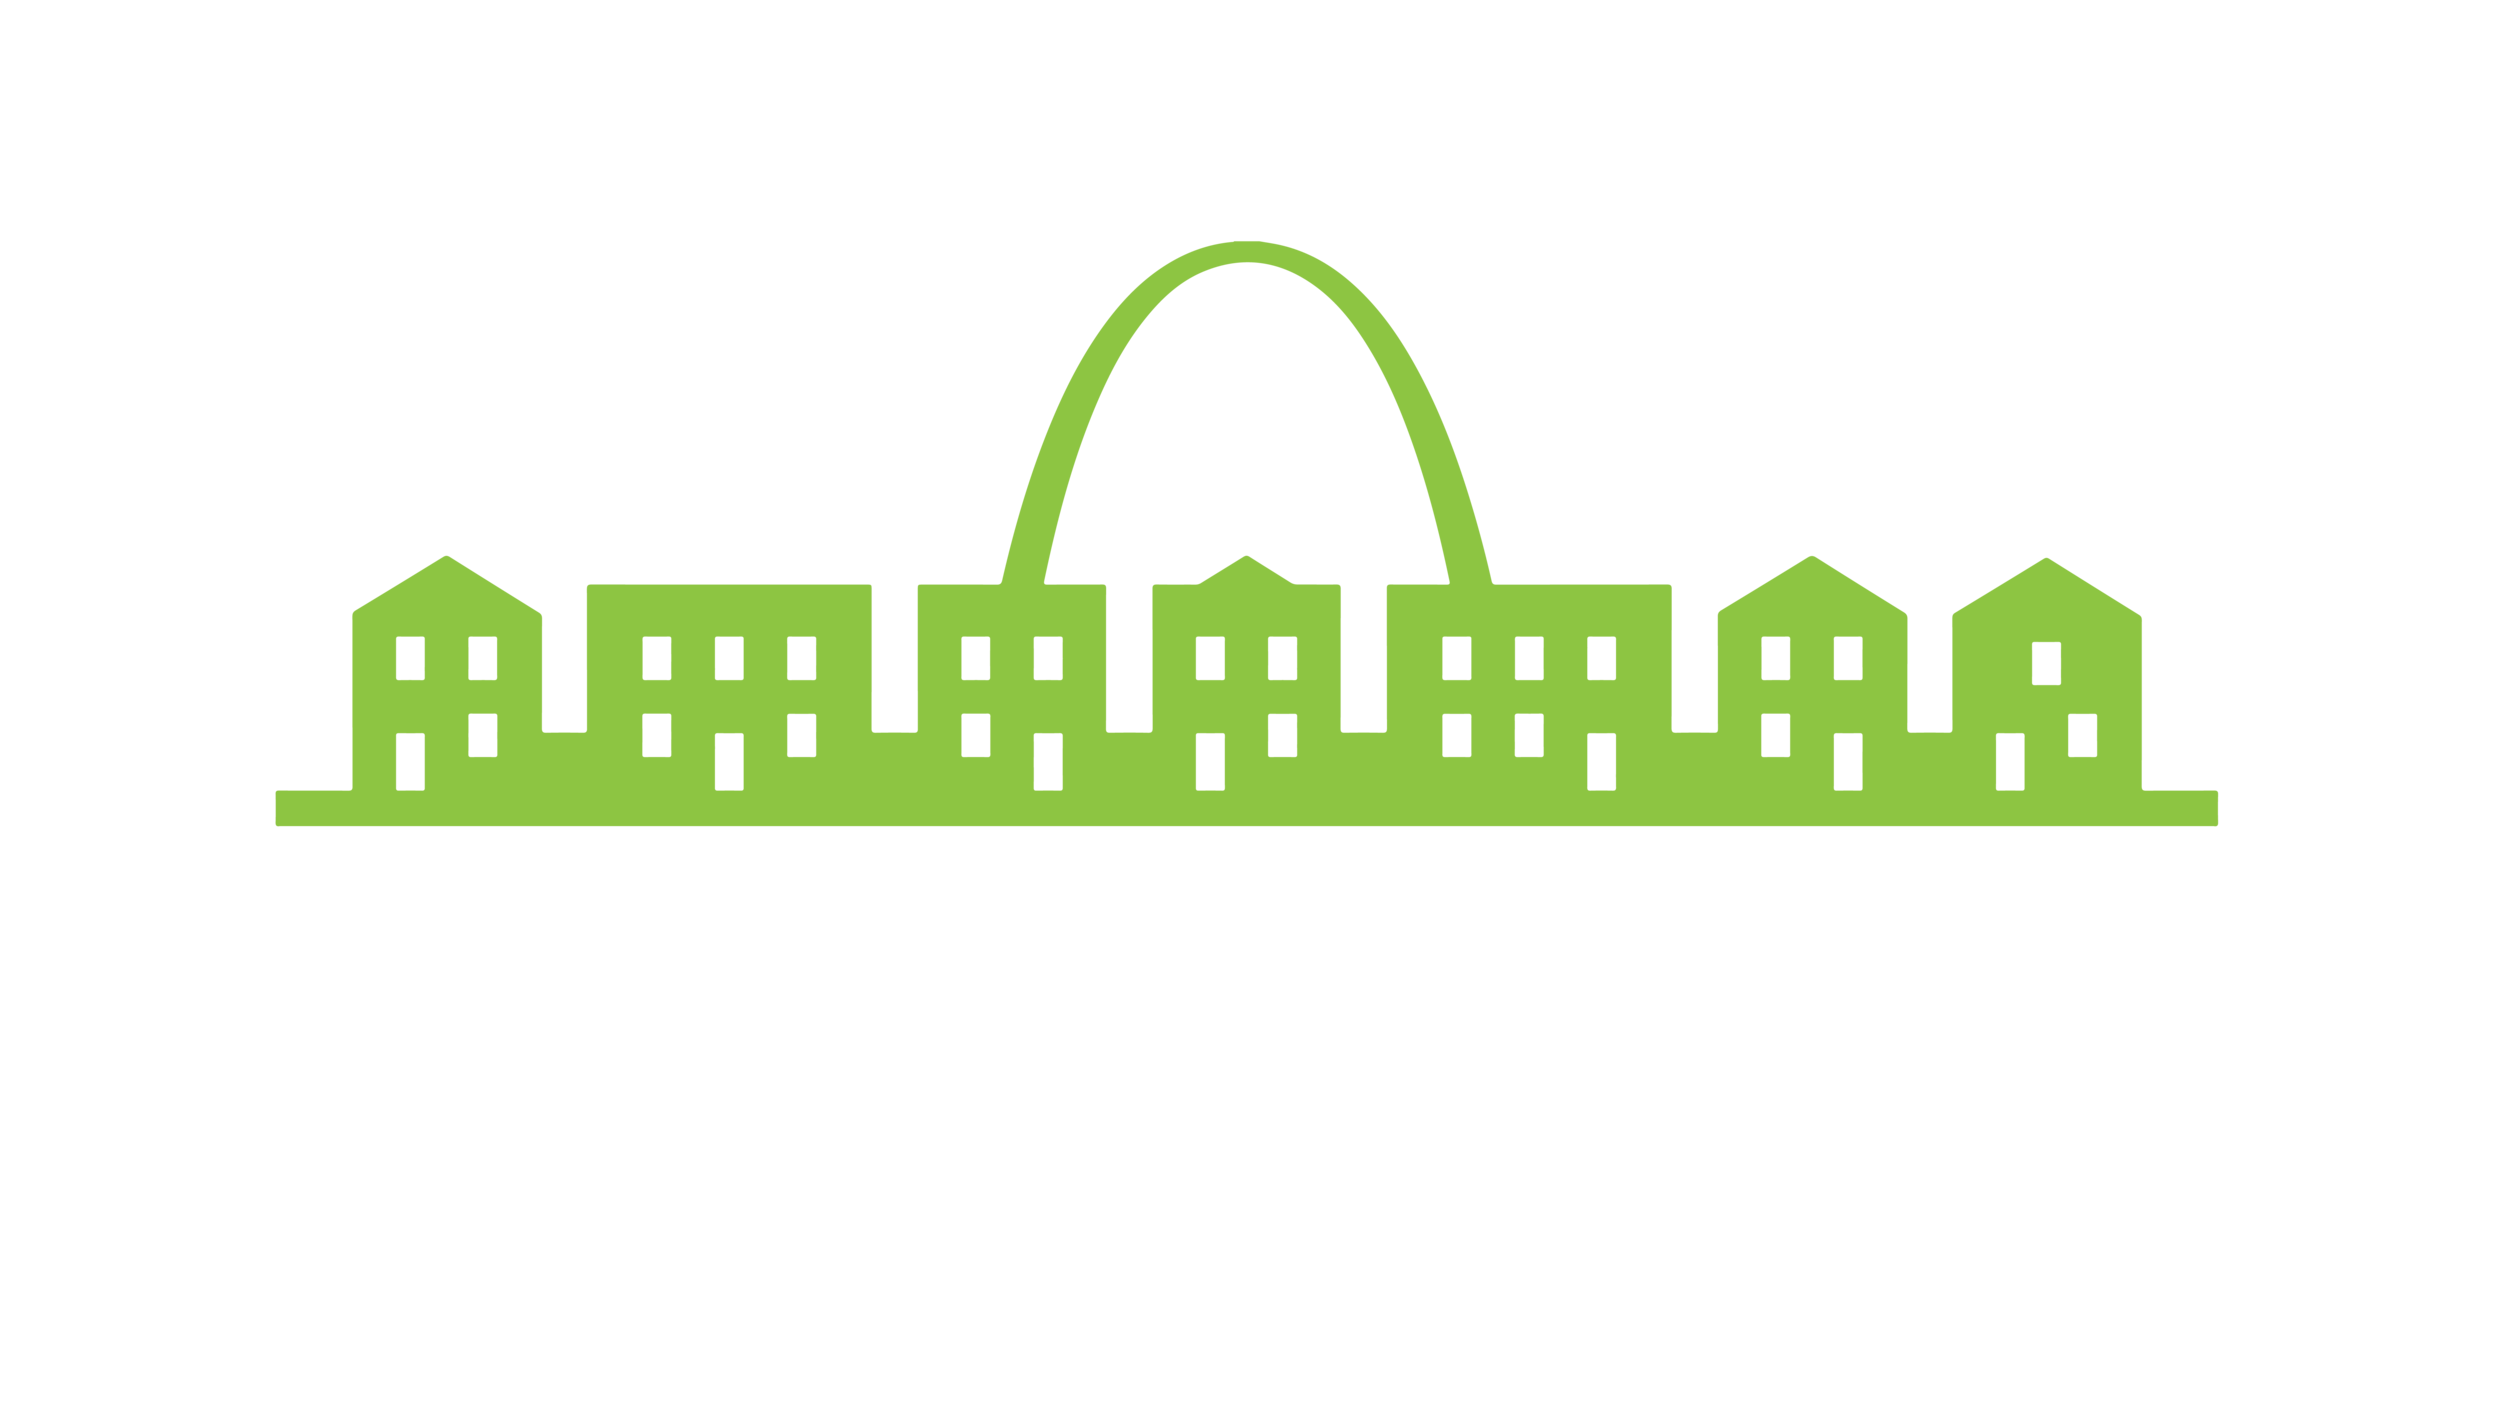 Mission: St. Louis